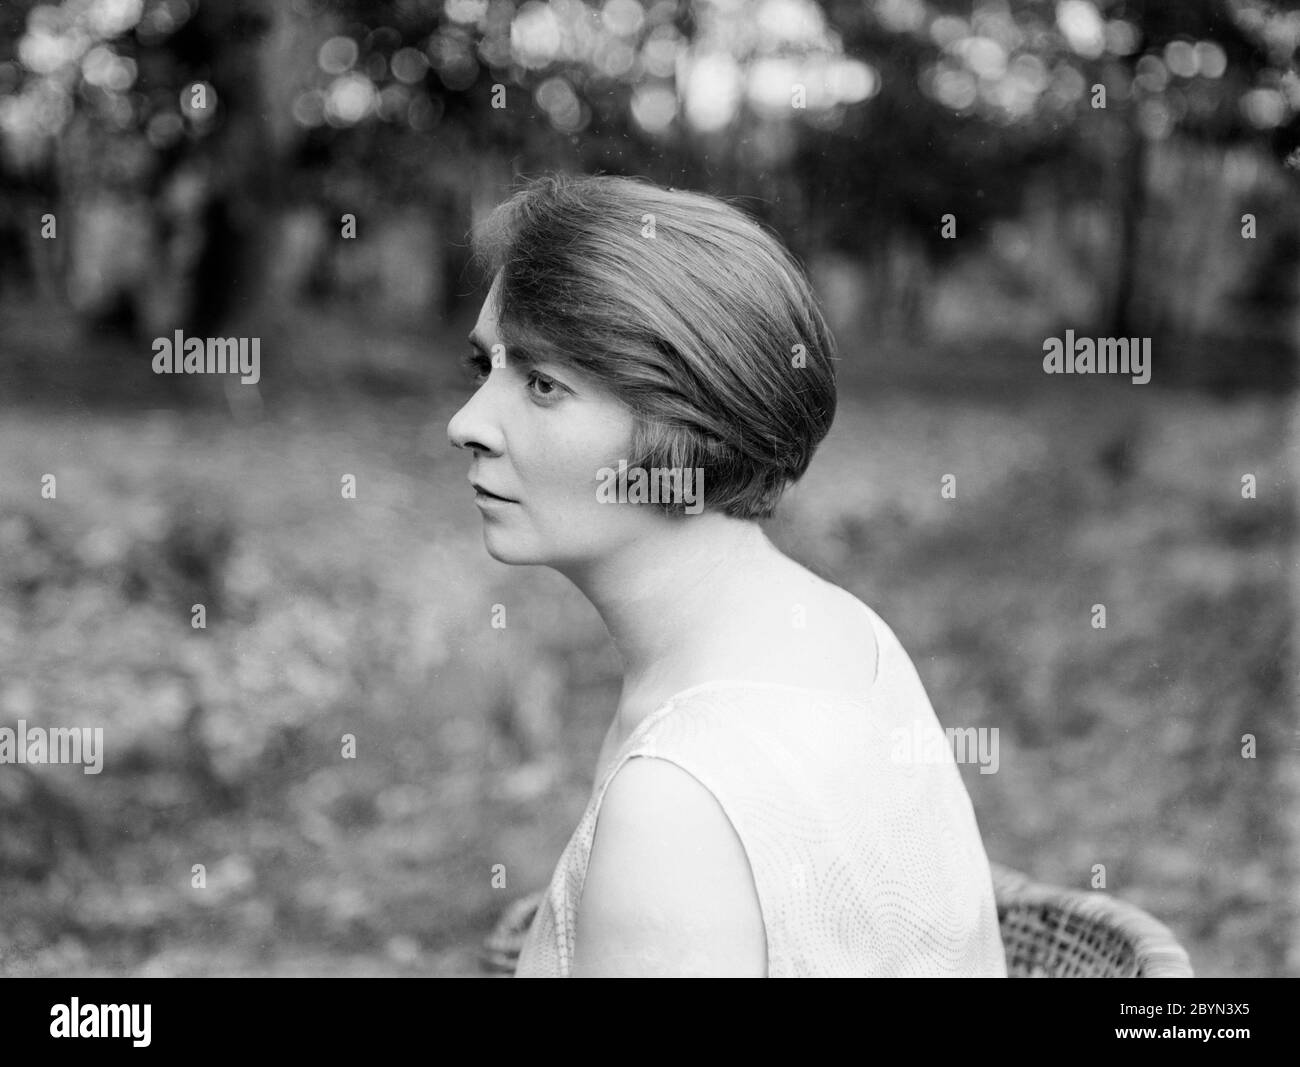 Une photographie de portrait anglais vintage des années 1920 en noir et blanc, montrant une vue latérale de la tête de jeune femme peut attirer. La photo est prise à l'extérieur avec la lumière naturelle, et montre la coiffure des années 1920. Banque D'Images